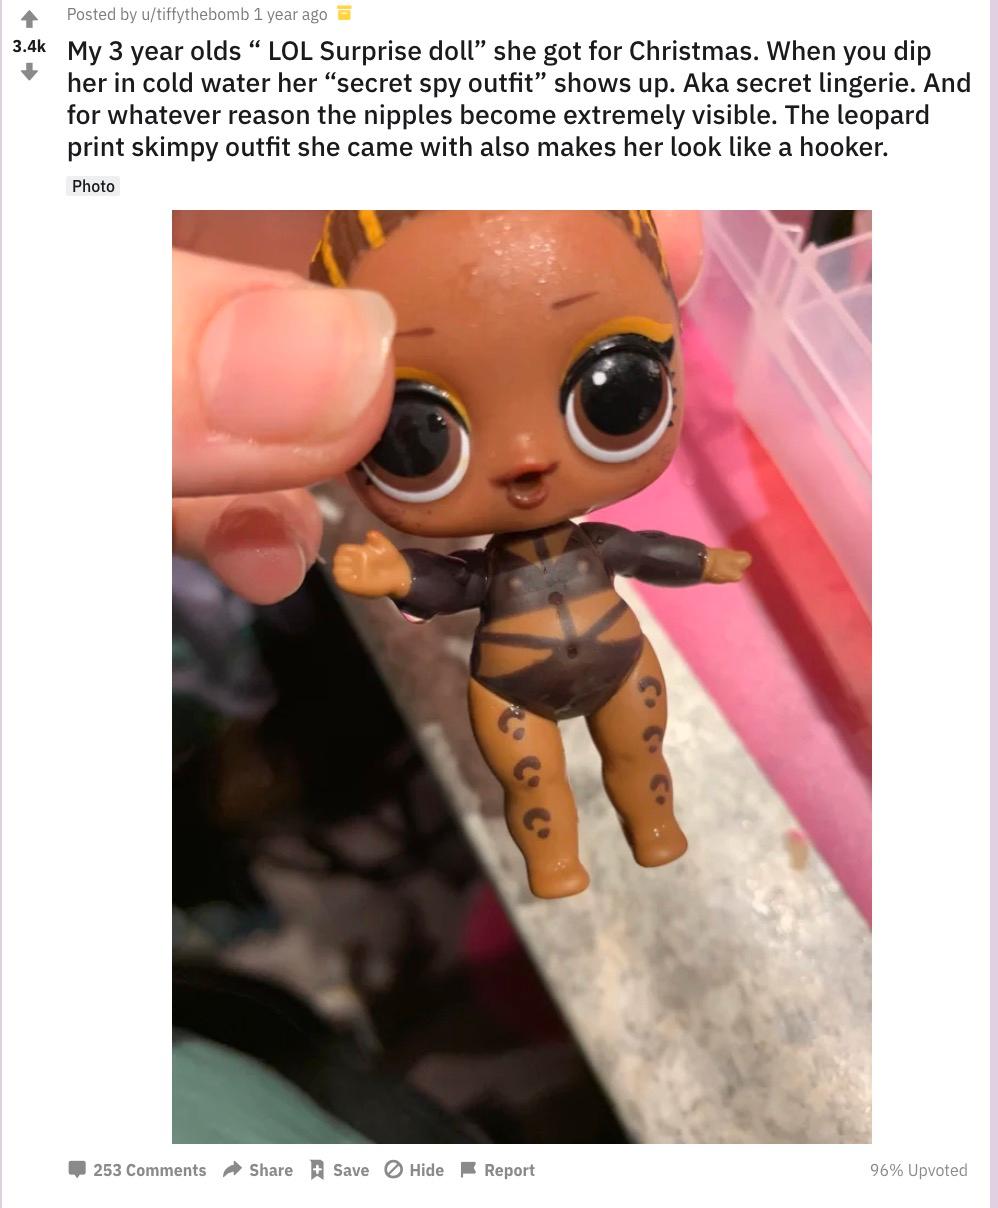 En användare på Reddit skrev om dockan redan början på 2019.